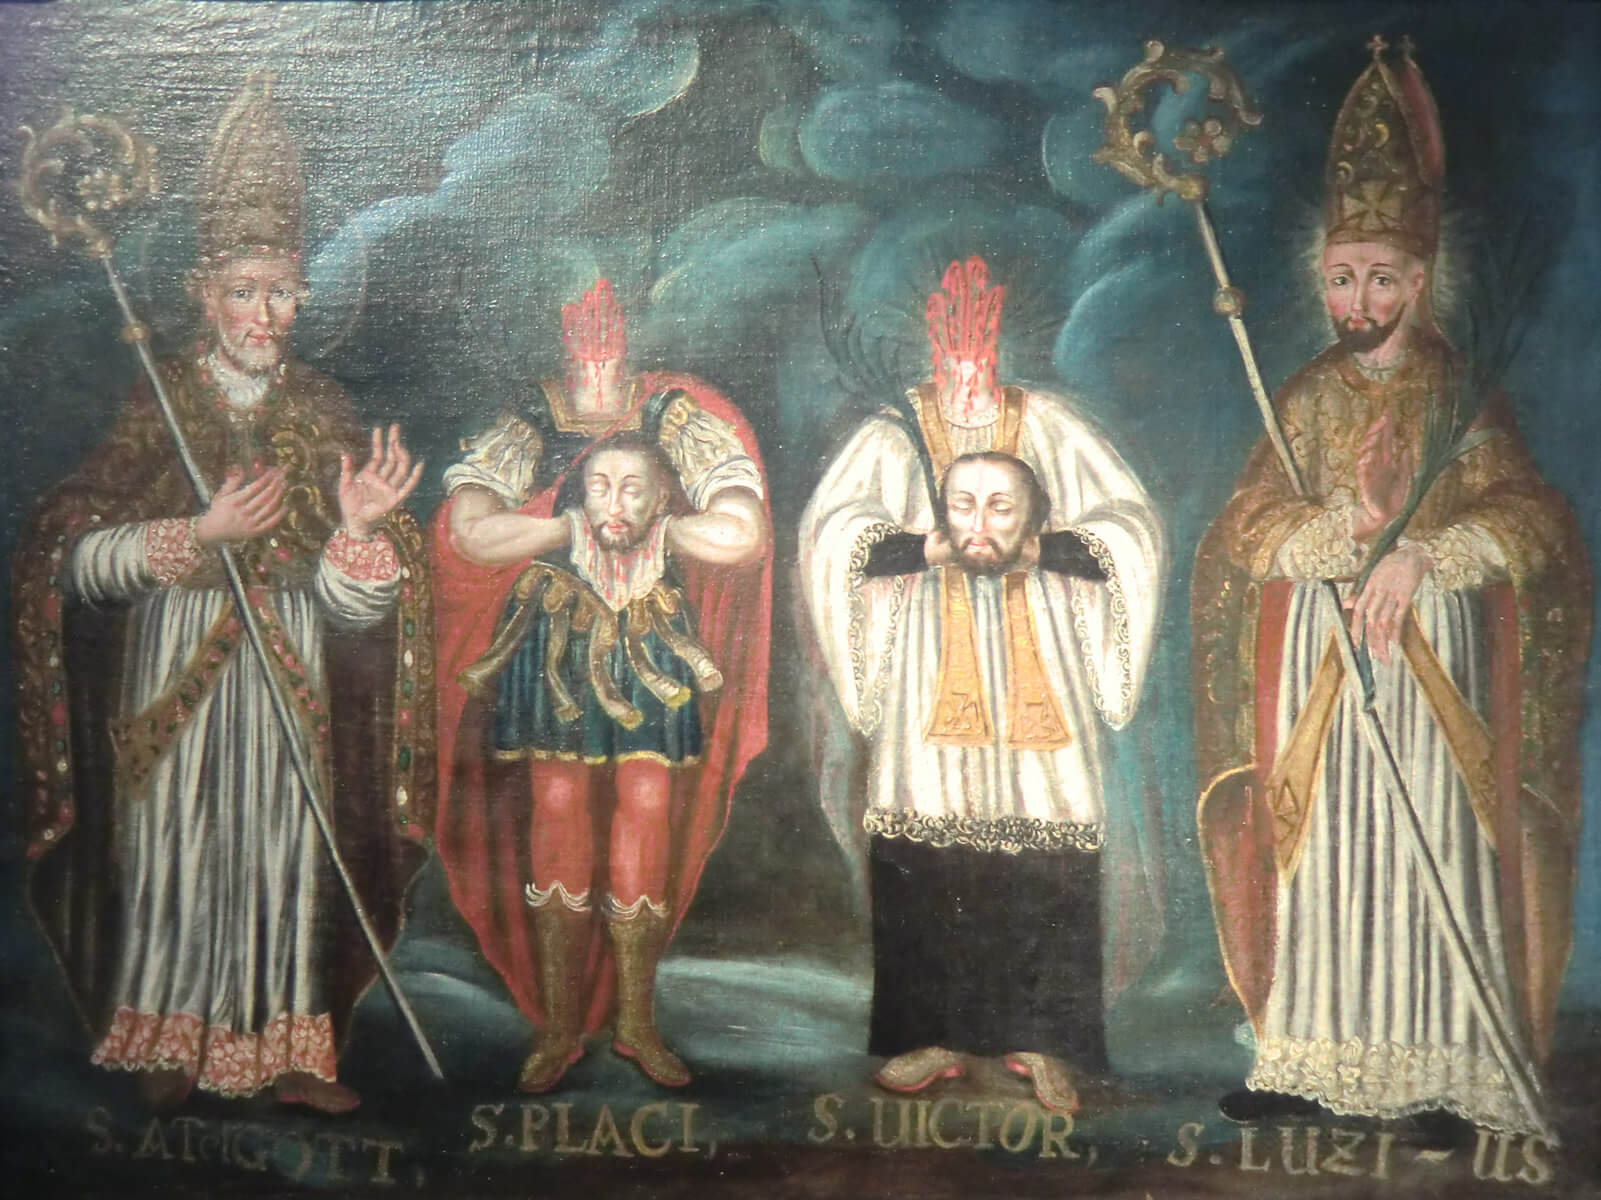 Adalgott, Placidus, Victor von Tomils und Lucius von Chur, um 1630, im Museum des Klosters Disentis